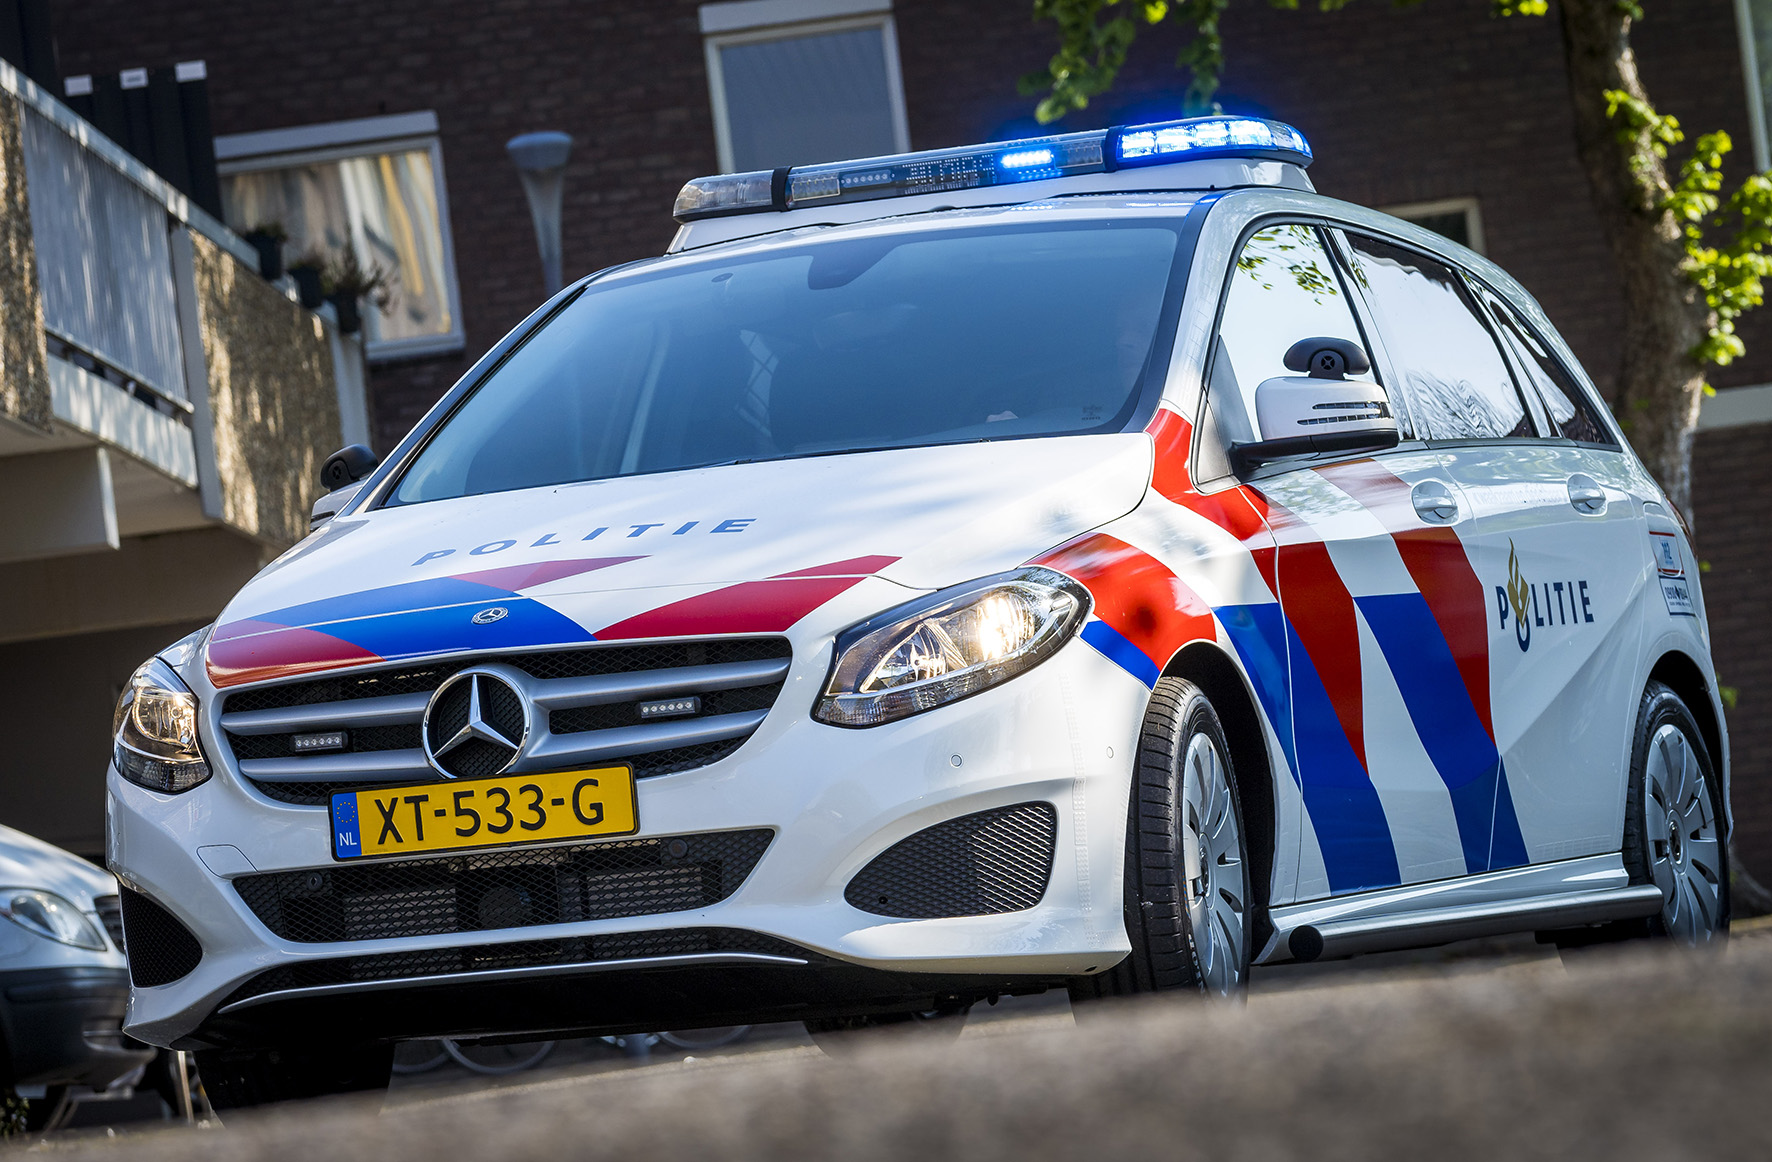 Politie naar de Leidsestraatweg in Harmelen vanwege aanrijding met letsel